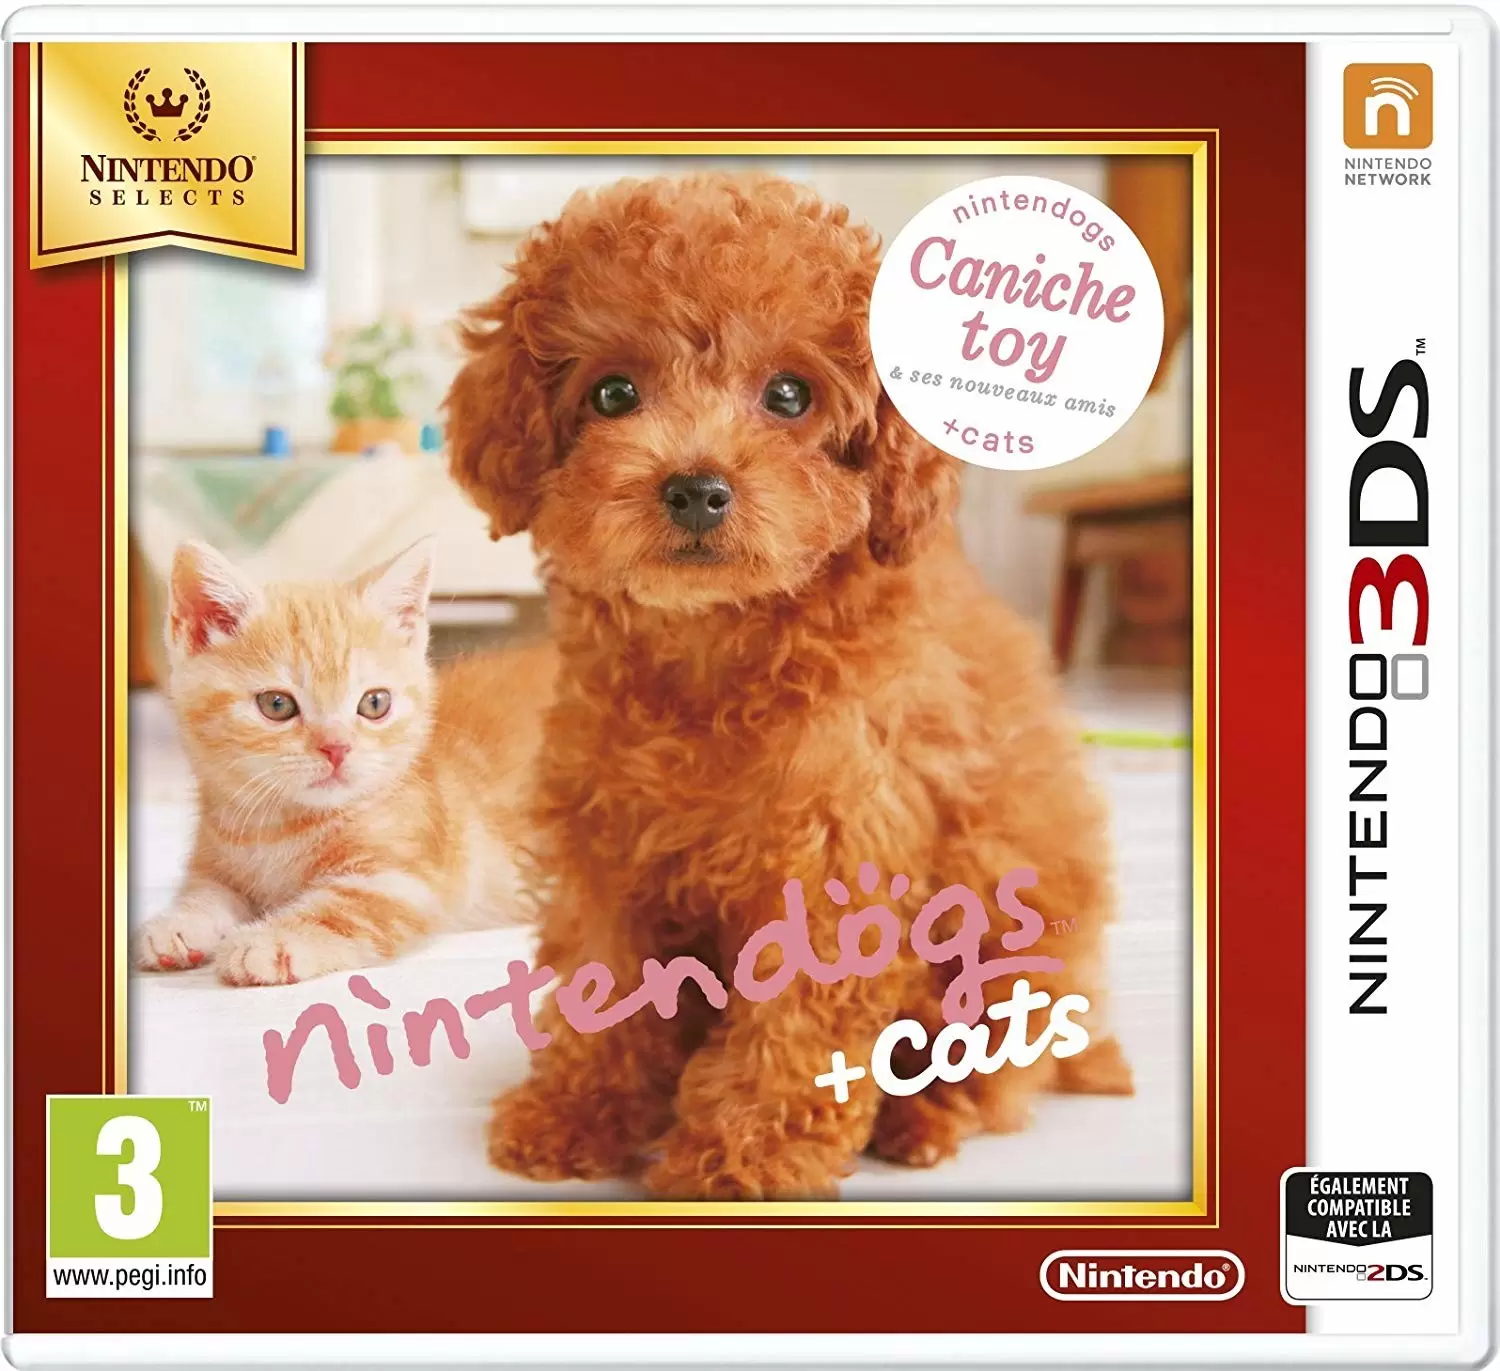 Nintendo 2DS / 3DS Games - Nintendogs + Cats Caniche Toy & Ses Nouveaux Amis (Nintendo Selects)